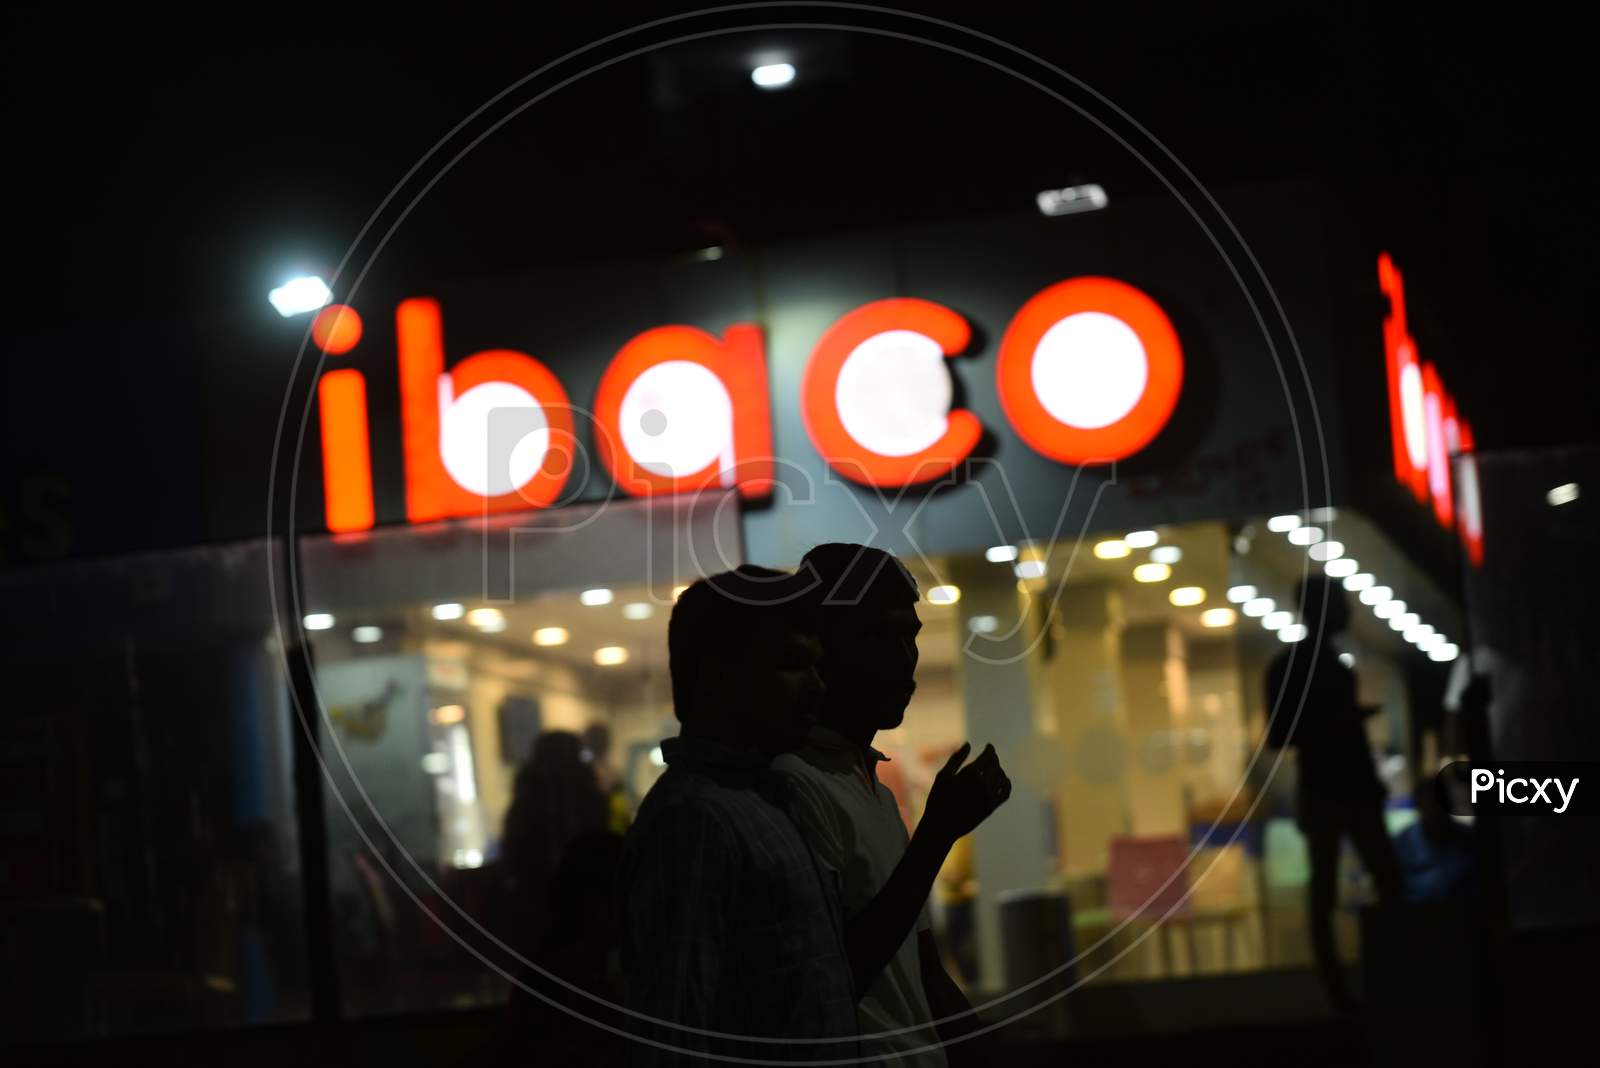 Ibaco Ice cream store